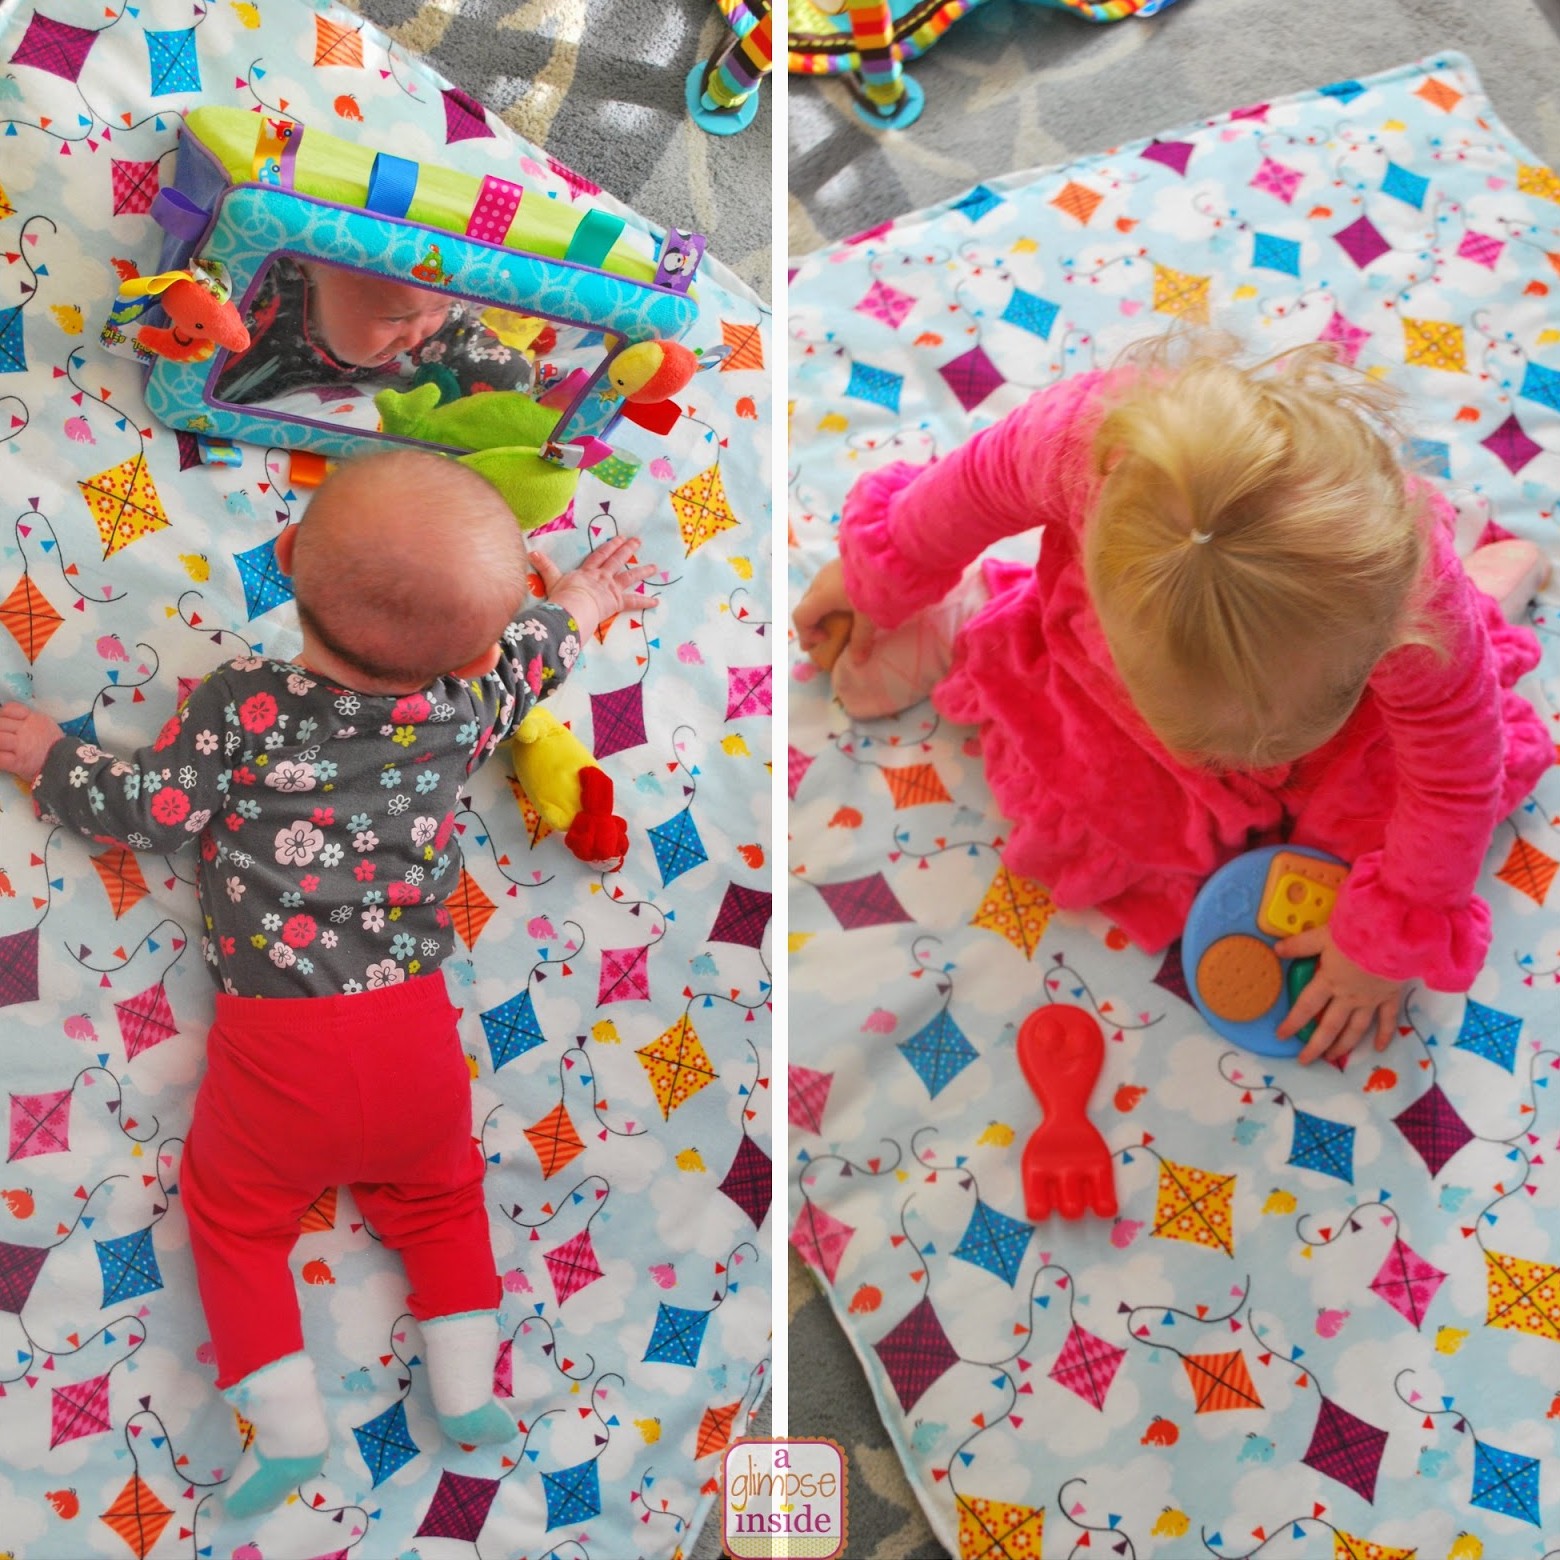 blanket-play mat- girls playing